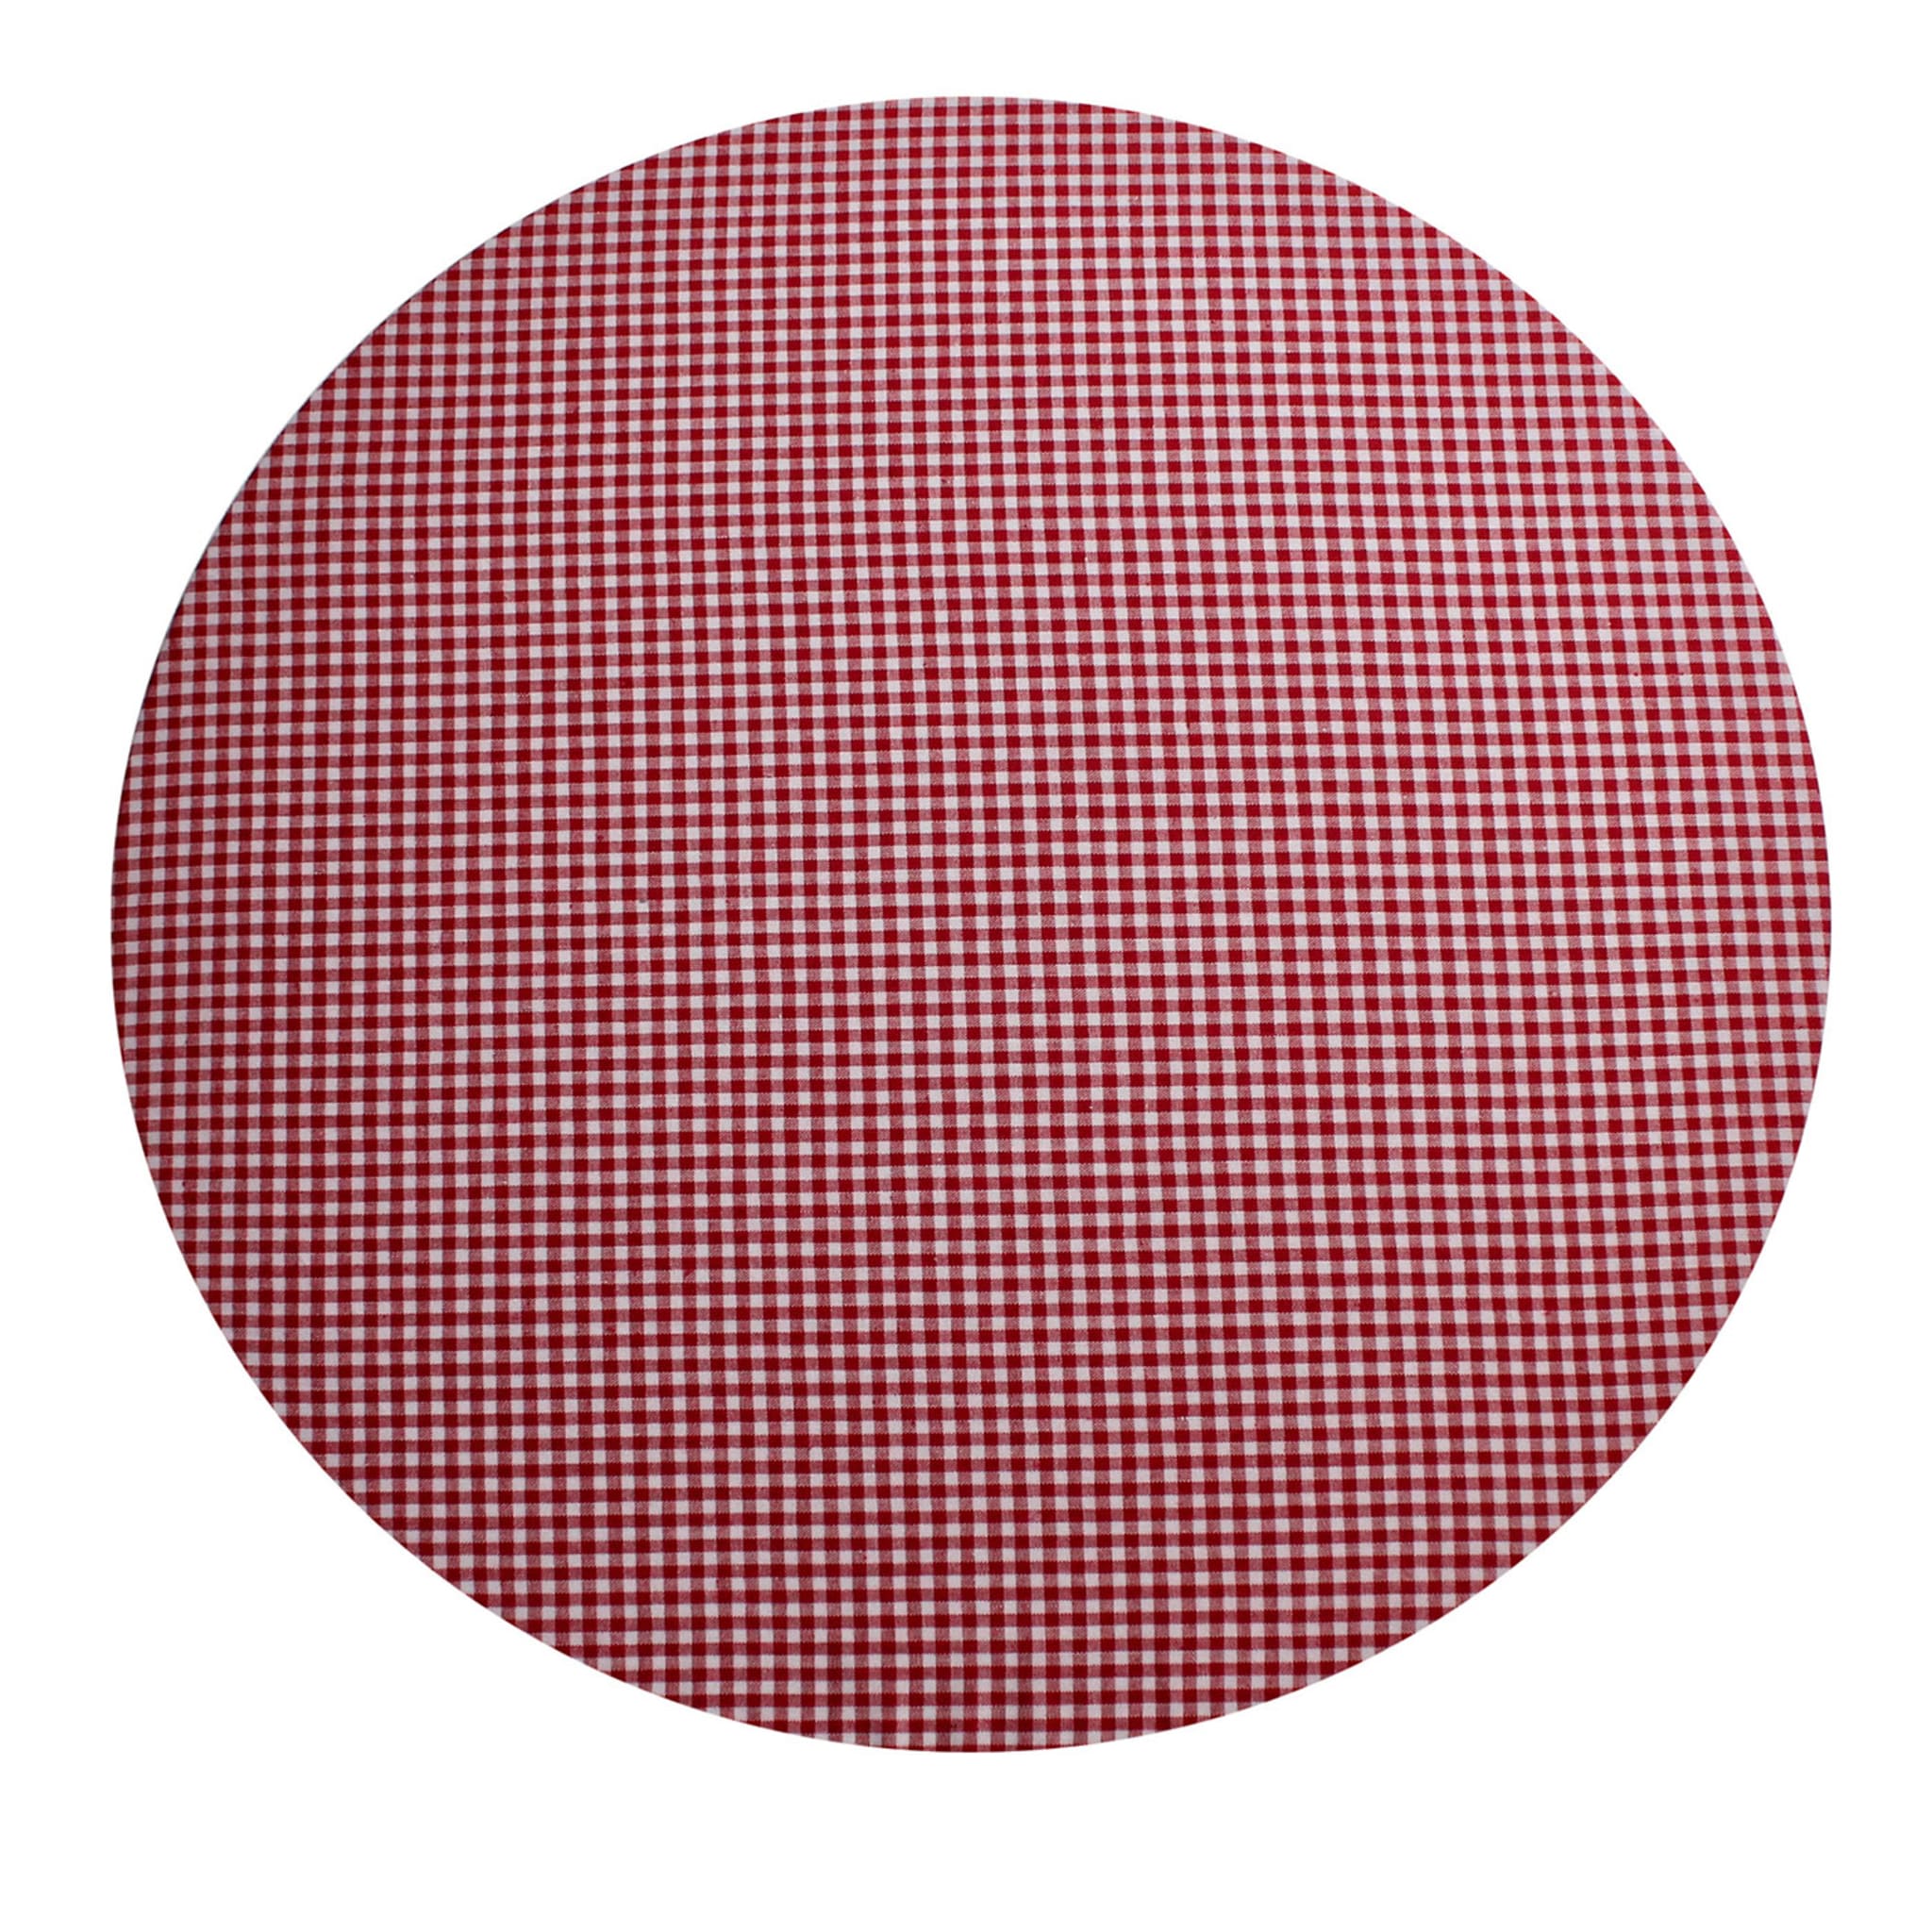 Mantel individual redondo de cuadros Cuffiette rojo y blanco #1 - Vista principal